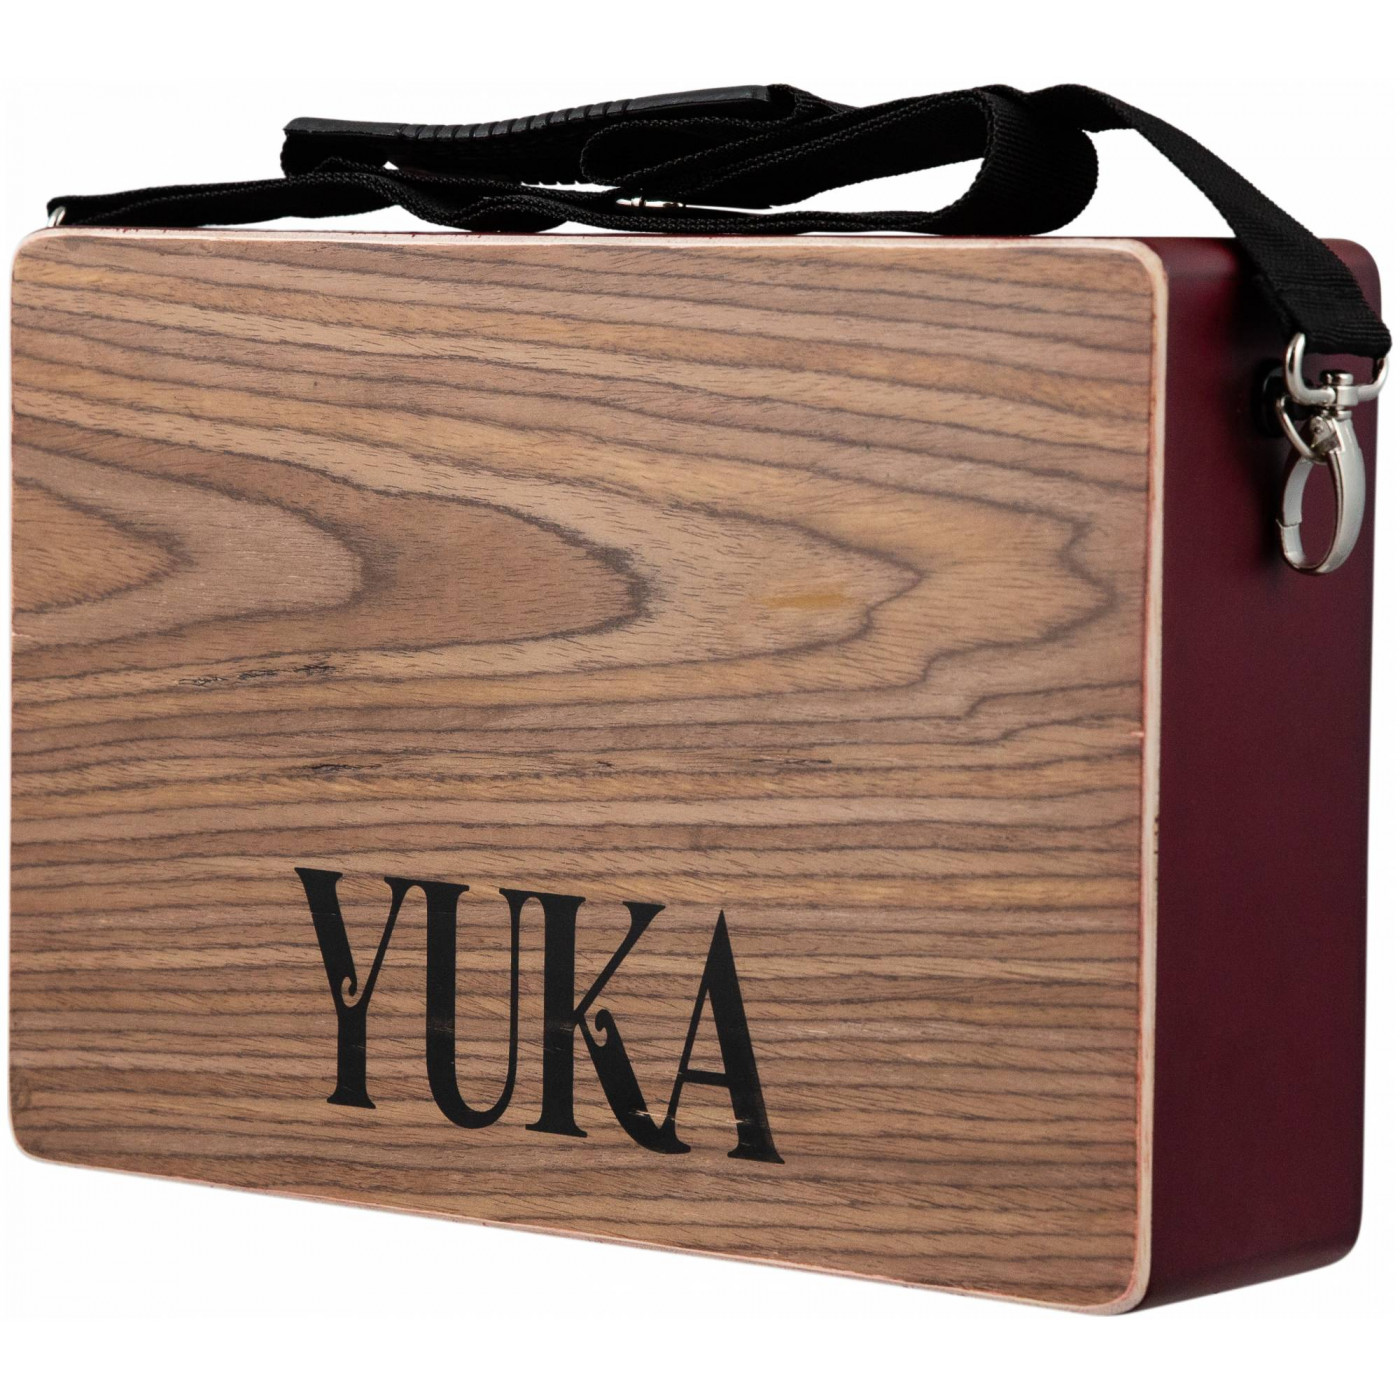 Прочие ударные, перкуссия, народные YUKA LT-CAJ1-RWRD компактный дорожный кахон с плоским ручным барабаном persussion instrument 31 5x 24 5x4 5 см